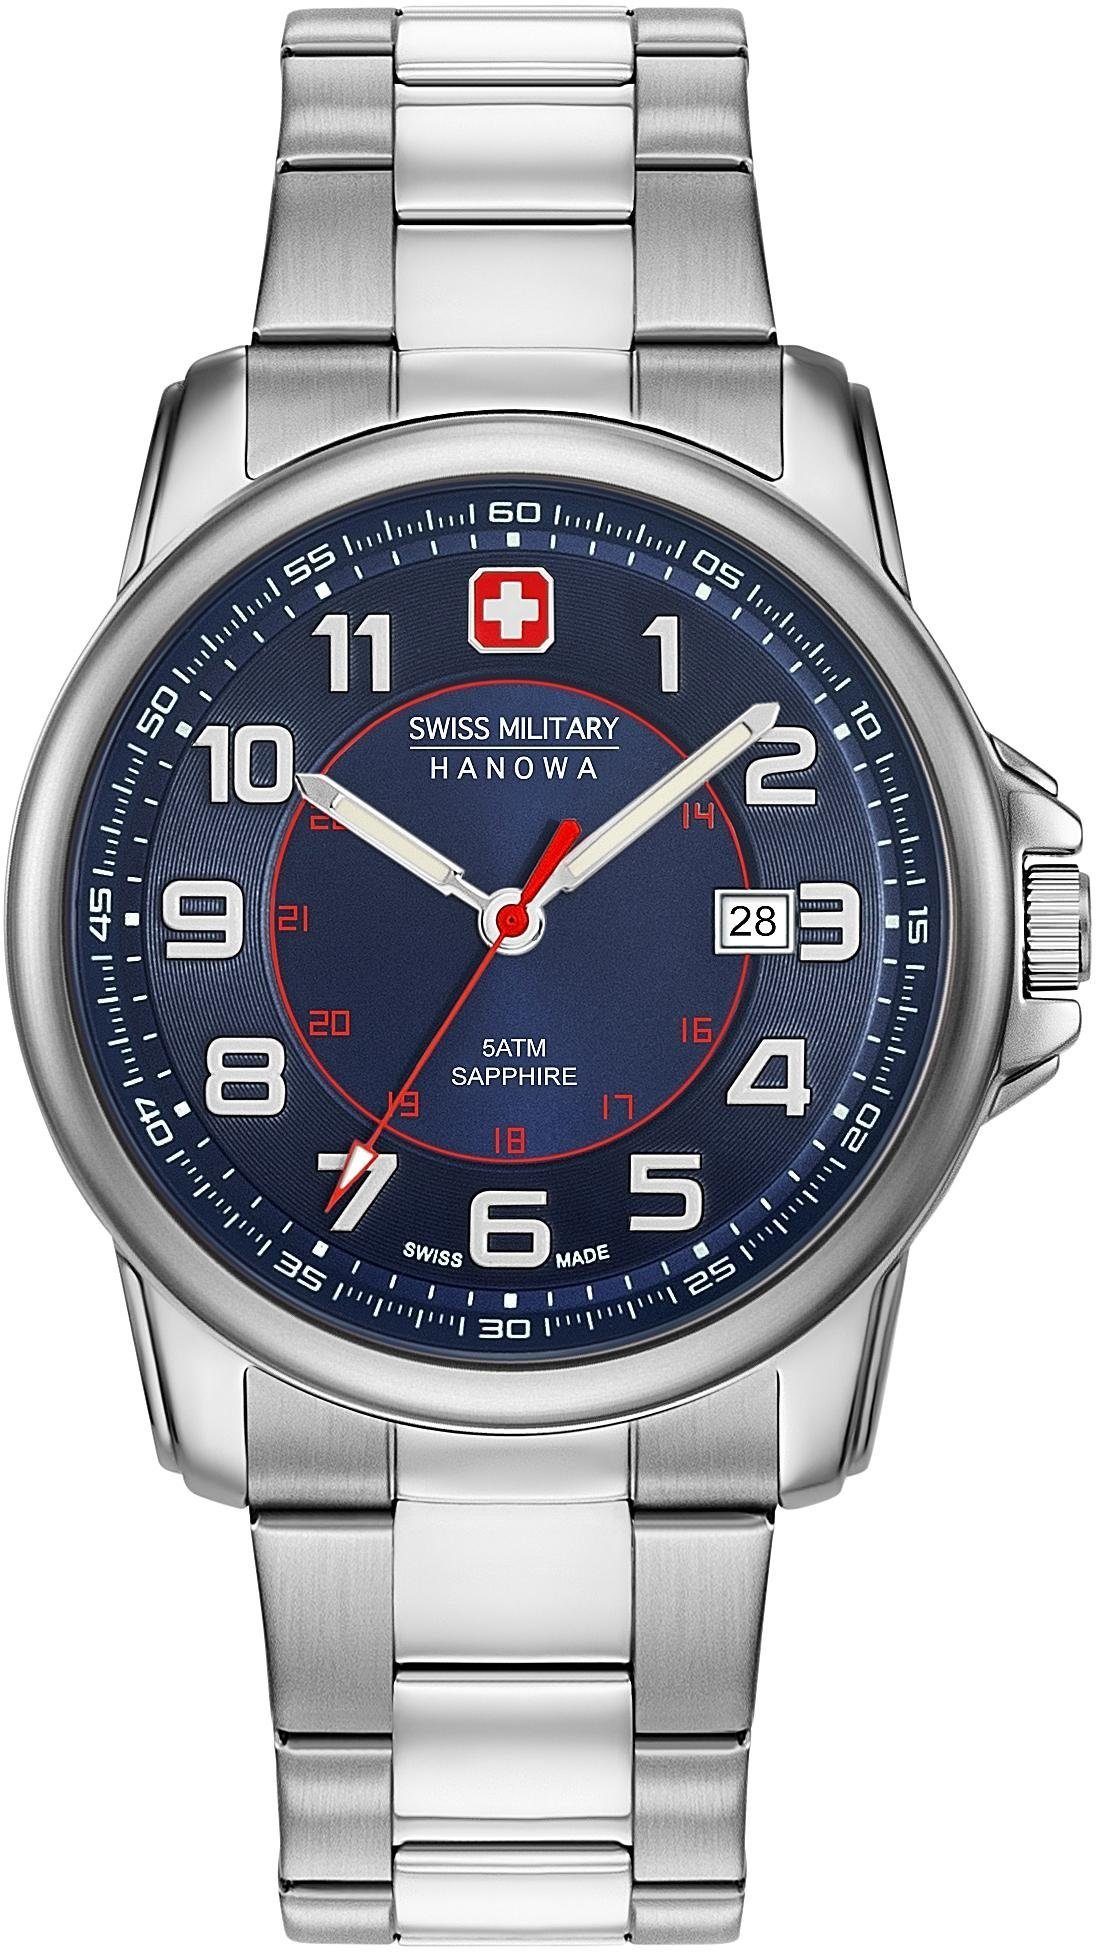 Swiss Military Hanowa Schweizer Uhr SWISS GRENADIER, 06-5330.04.003,  Edelstahlgehäuse, silberfarben, Ø ca. 43 mm